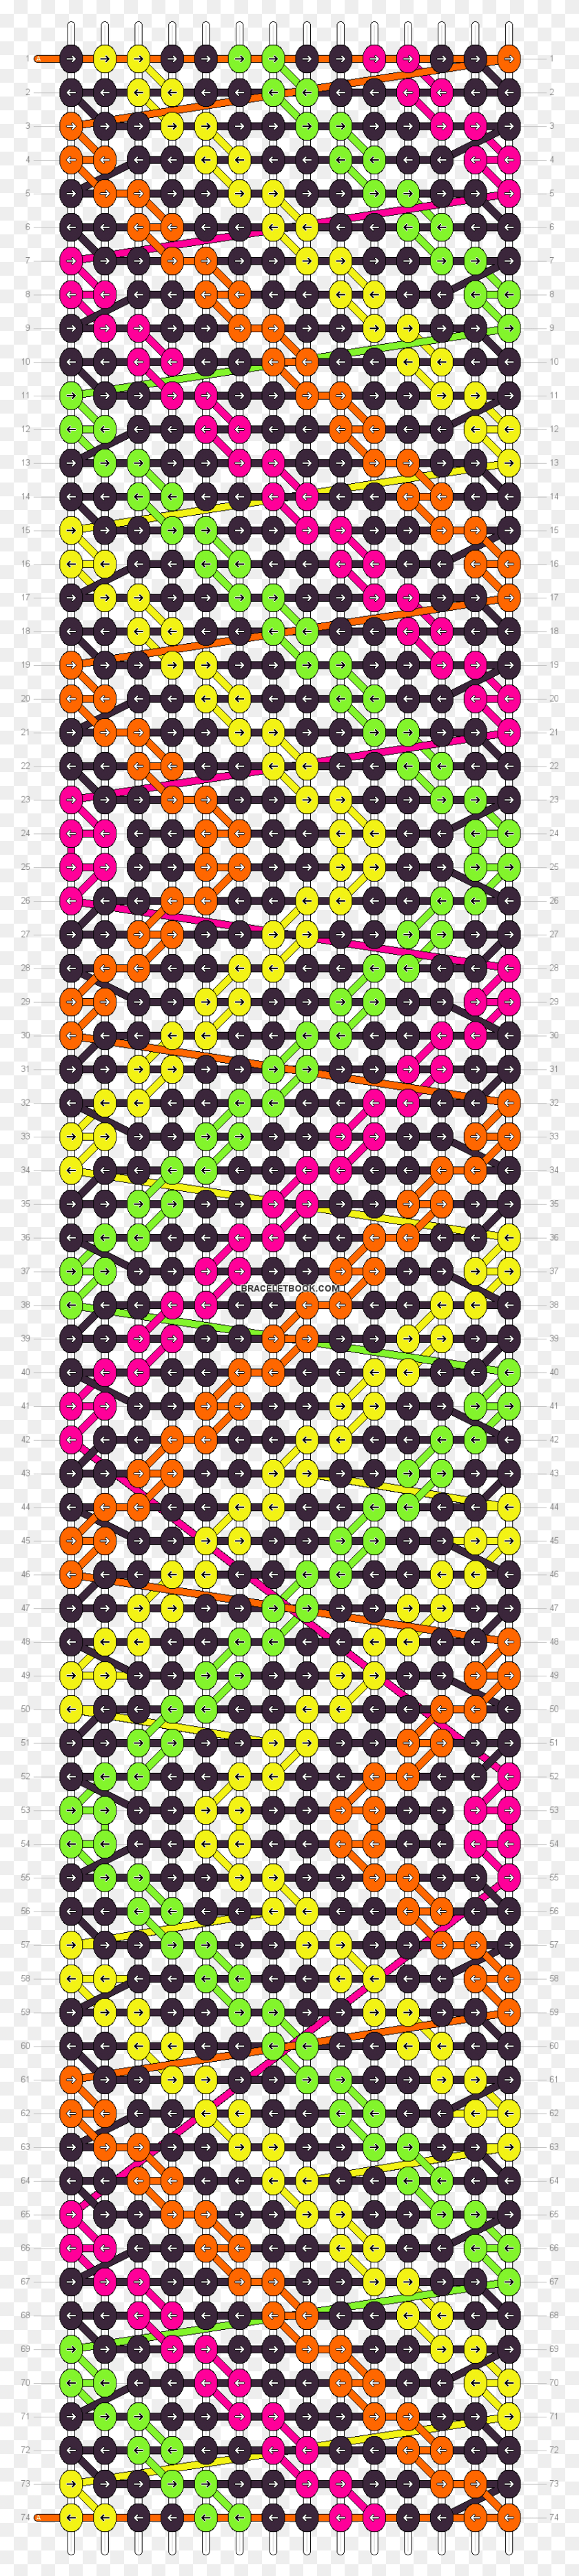 830x3913 Альфа-Паттерн Выкройки Браслетов Дружбы Виноваты В Наших Звездах, Pac Man Hd Png Download